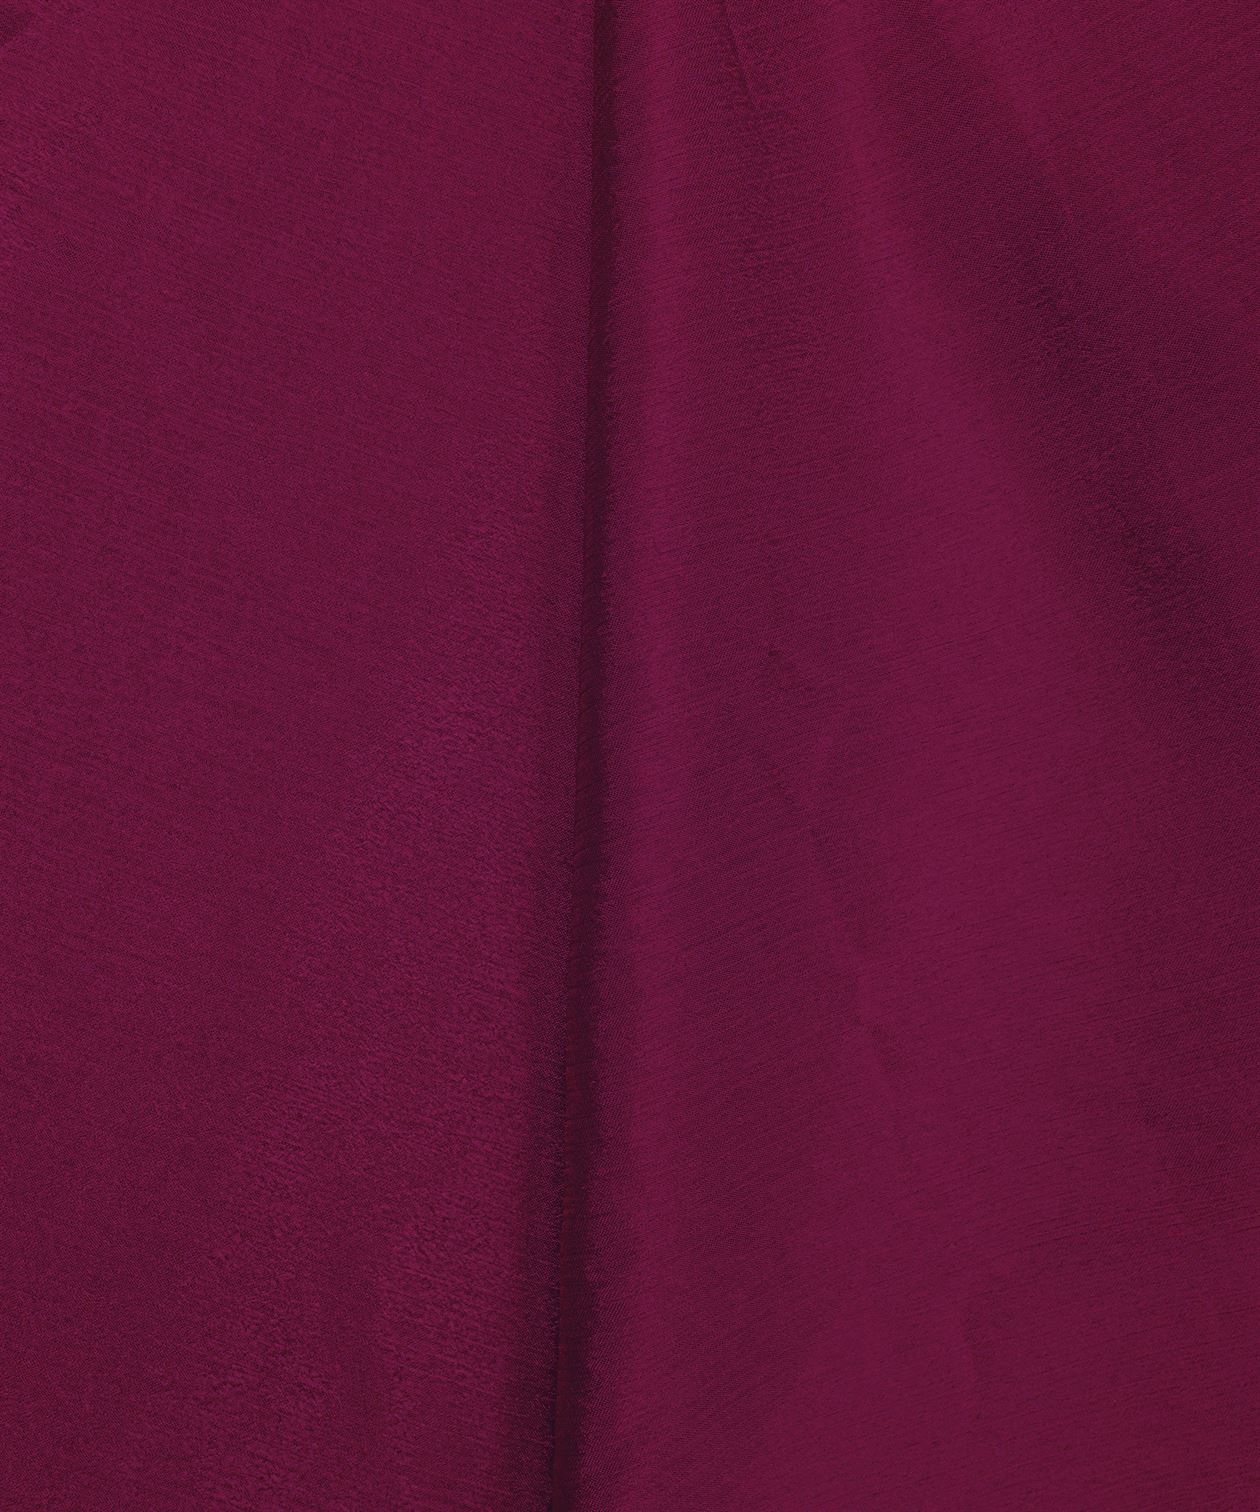 Wine Plain Dyed Bright Chiffon Fabric